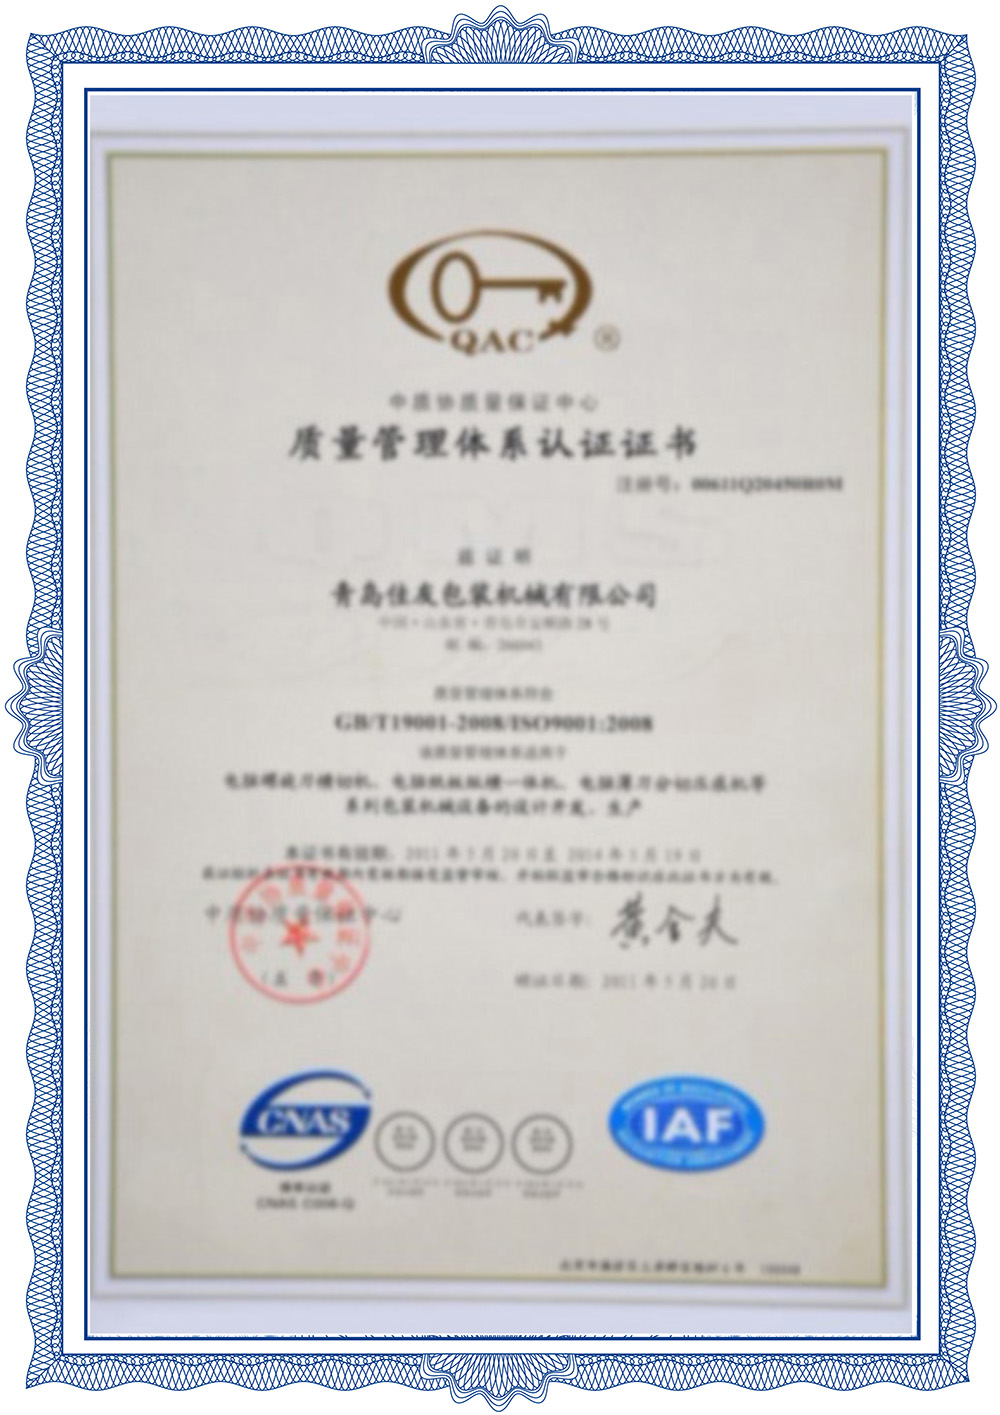 Certificació del sistema de gestió de la qualitat